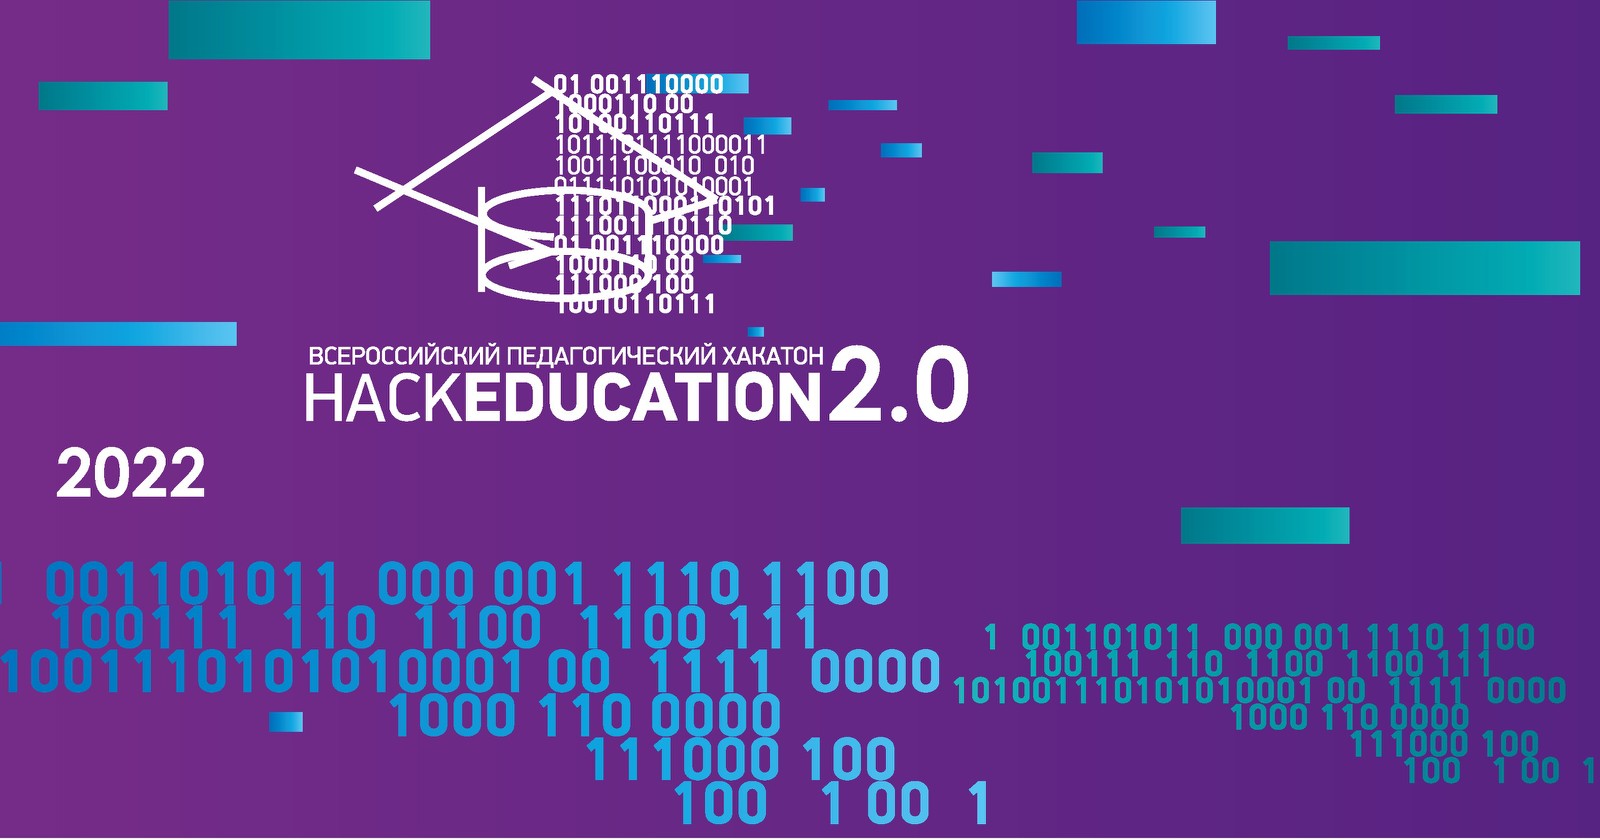 Студентов приглашают на хакатон «HackEducation 2.0»